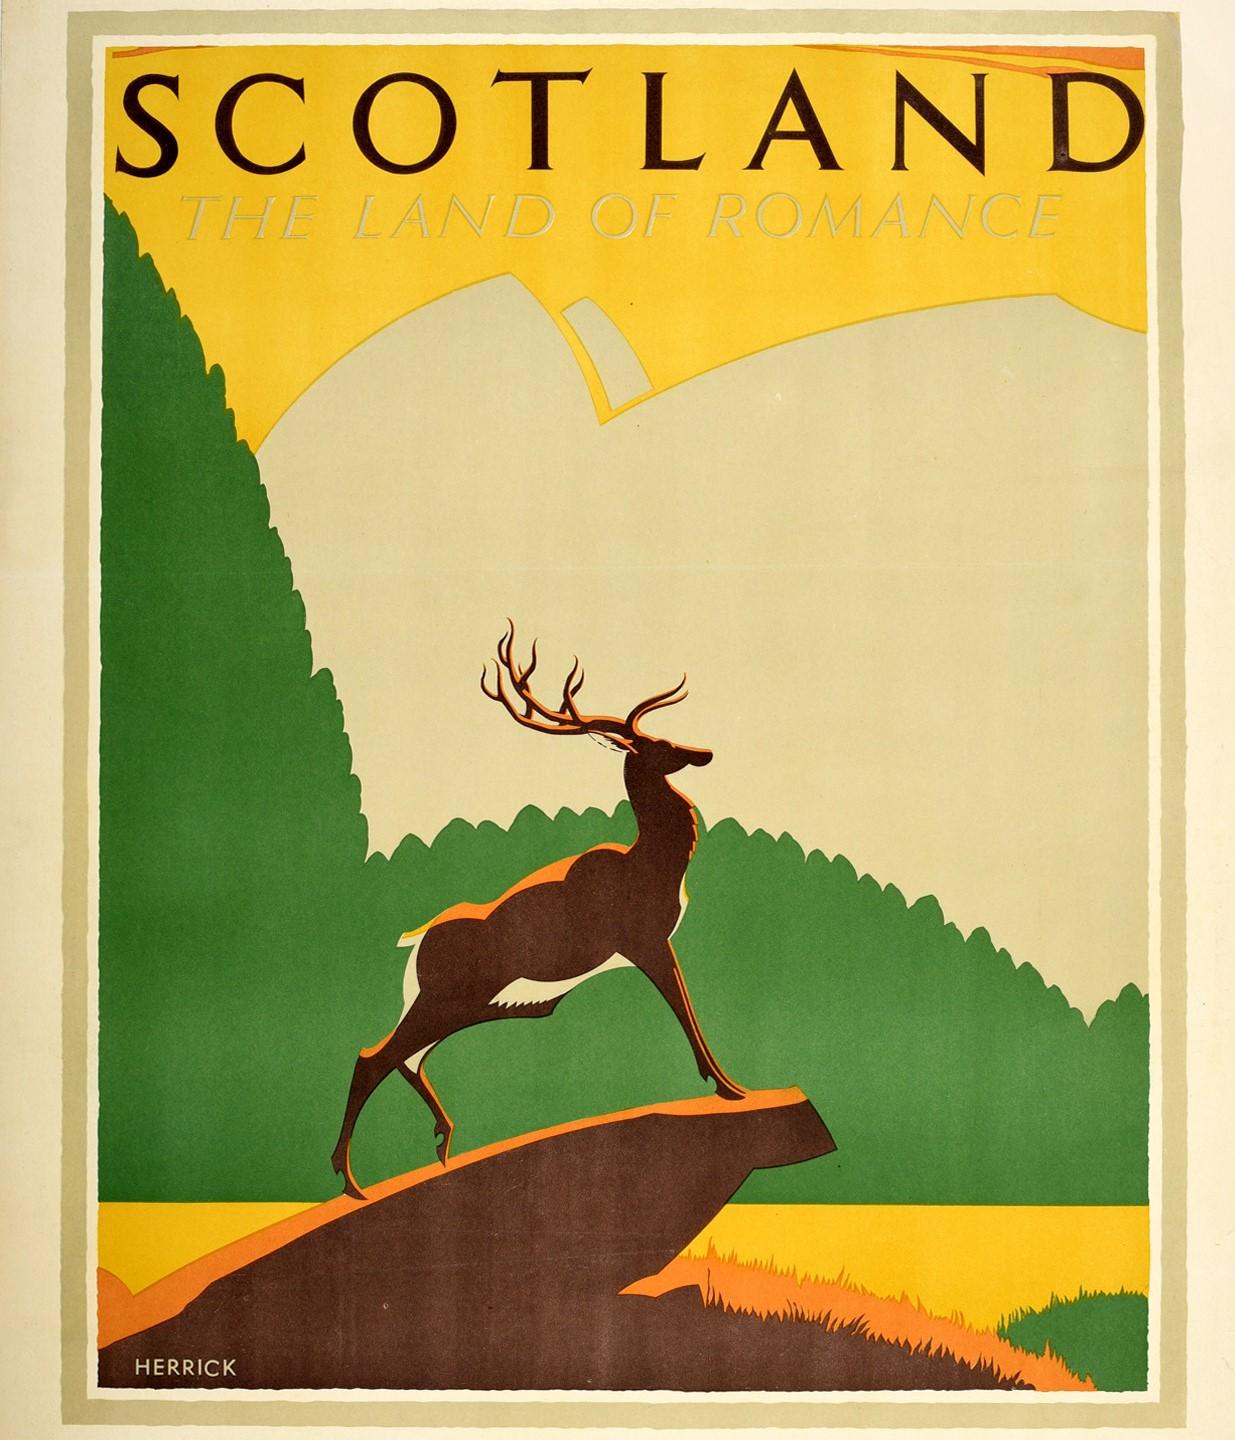 Original-Reiseplakat für Schottland - The Land of Romance, herausgegeben von der Anchor Line New York und Glasgow, mit einem atemberaubenden Kunstwerk von Frederick Charles Herrick (1887-1970), das einen Hirsch zeigt, der stolz auf einem Felsen